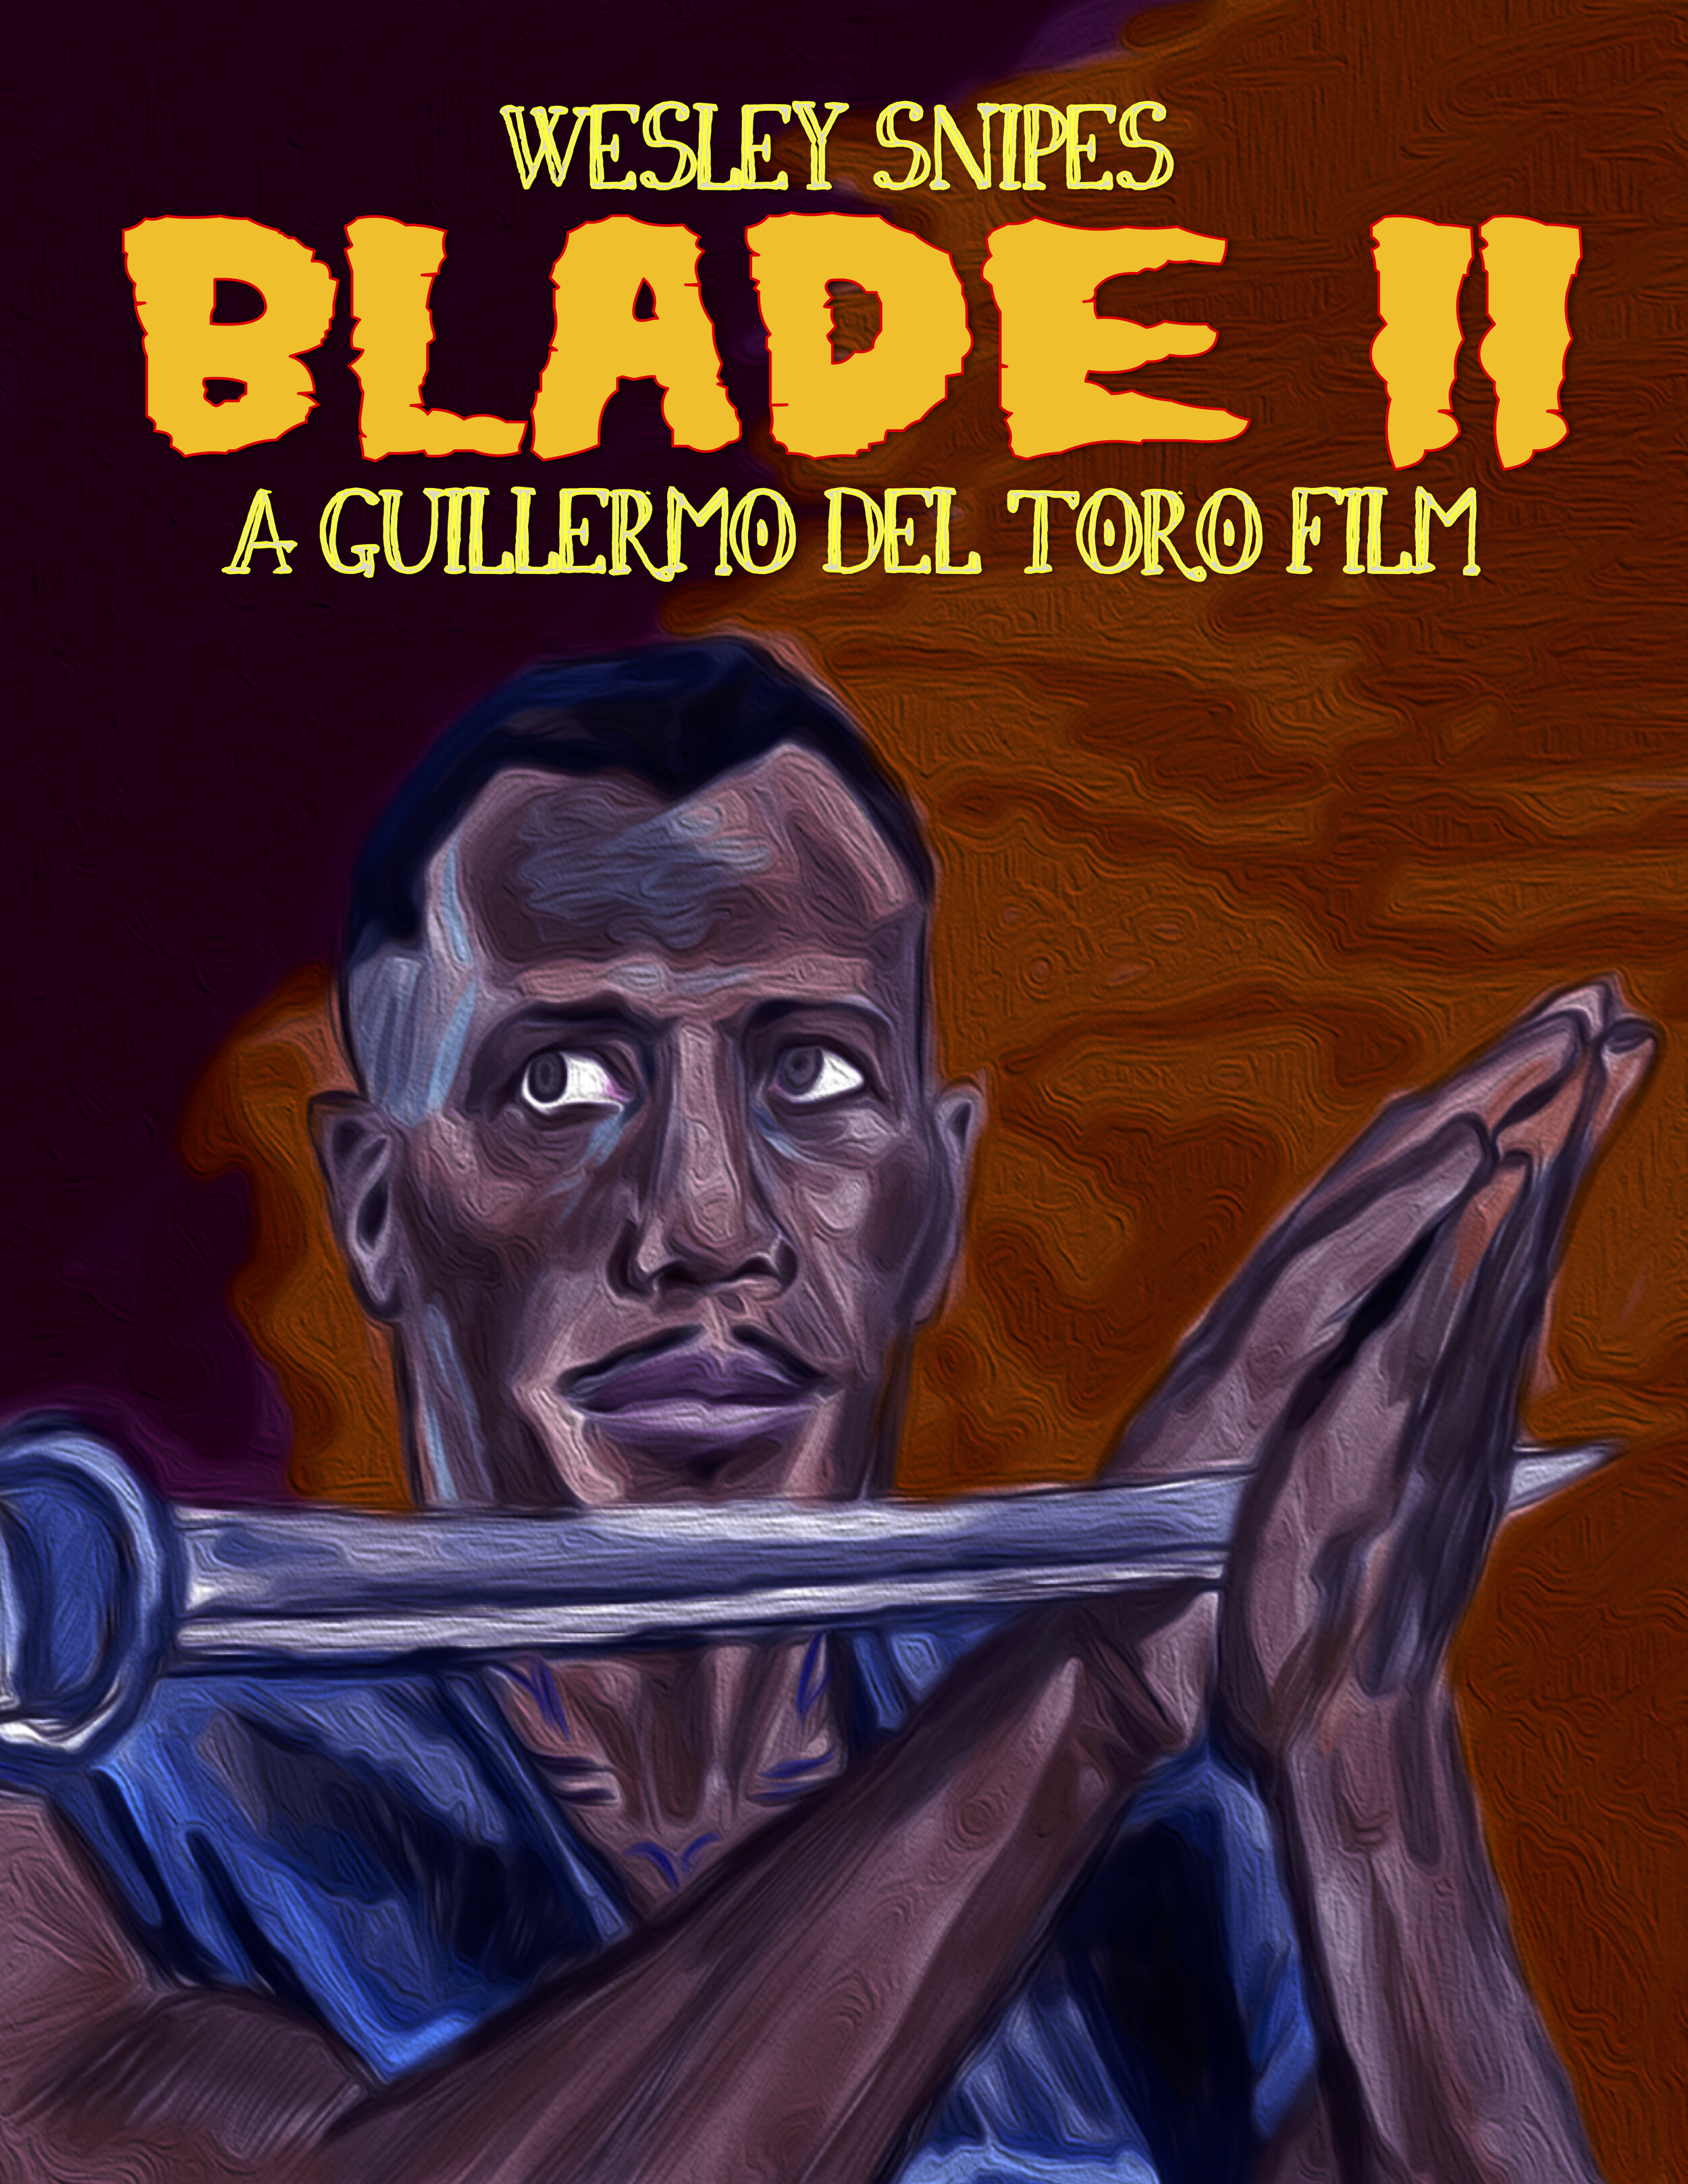 Blade II (2002)